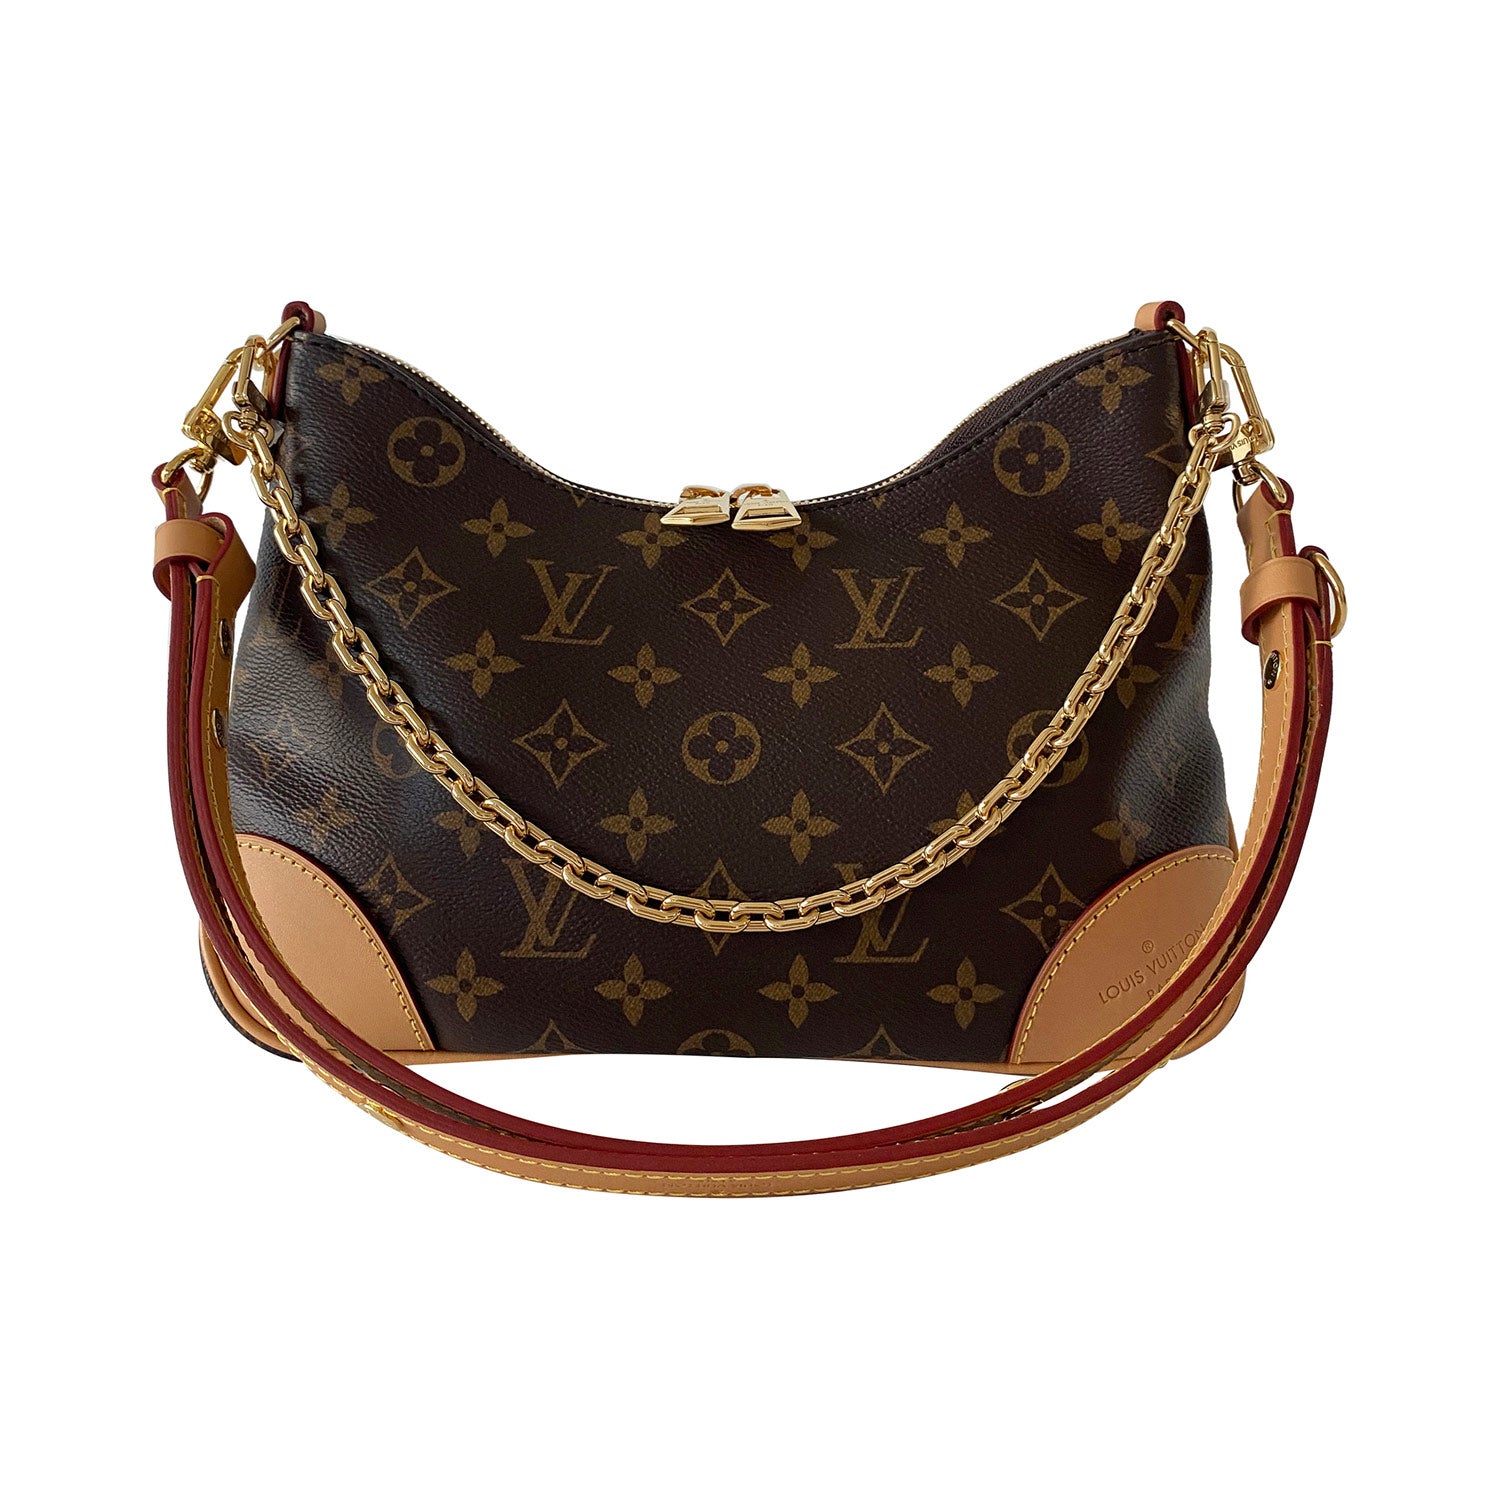 Shop authentic Louis Vuitton Monogram Boulogne Bag at revogue for just USD  2,240.00